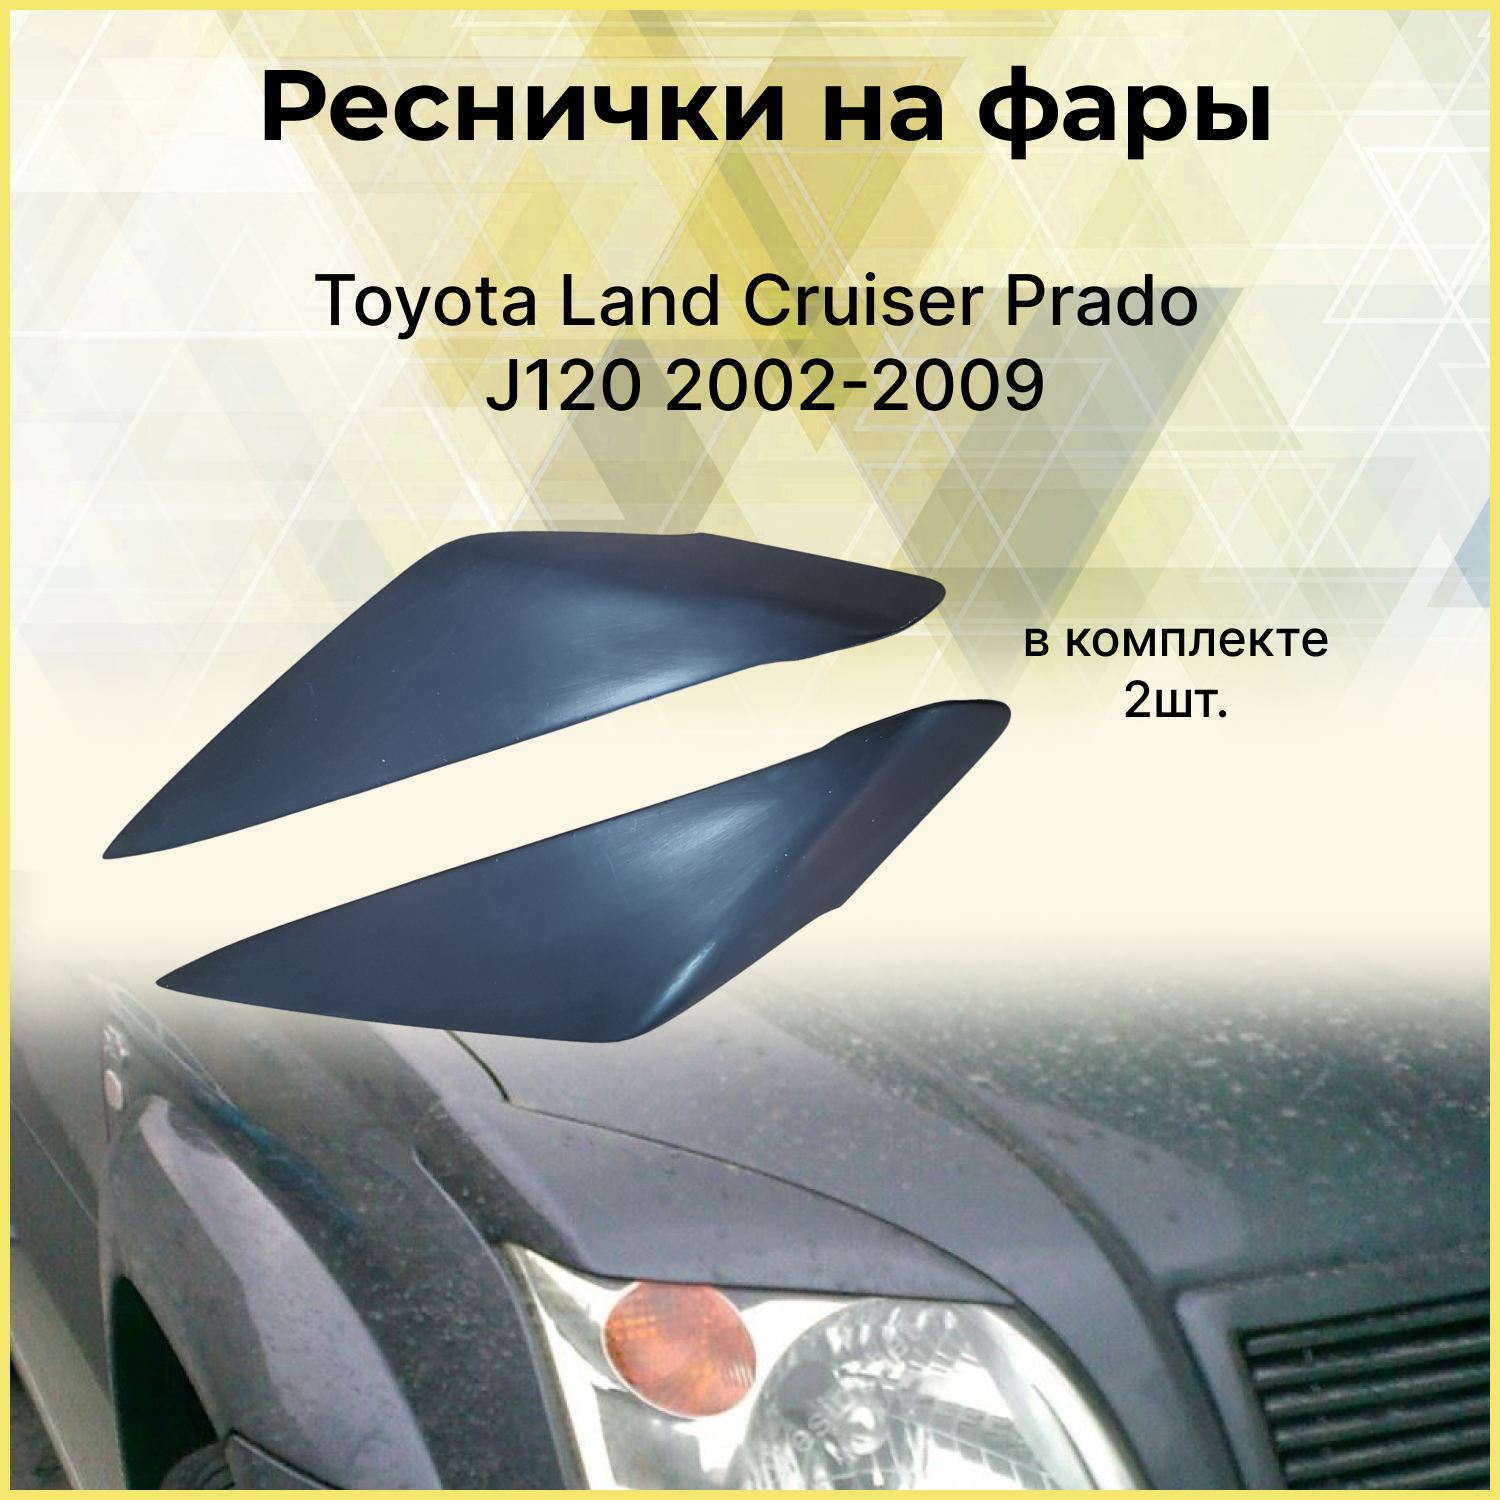 Реснички на фары Toyota Land Cruiser Prado J120 2002-2009